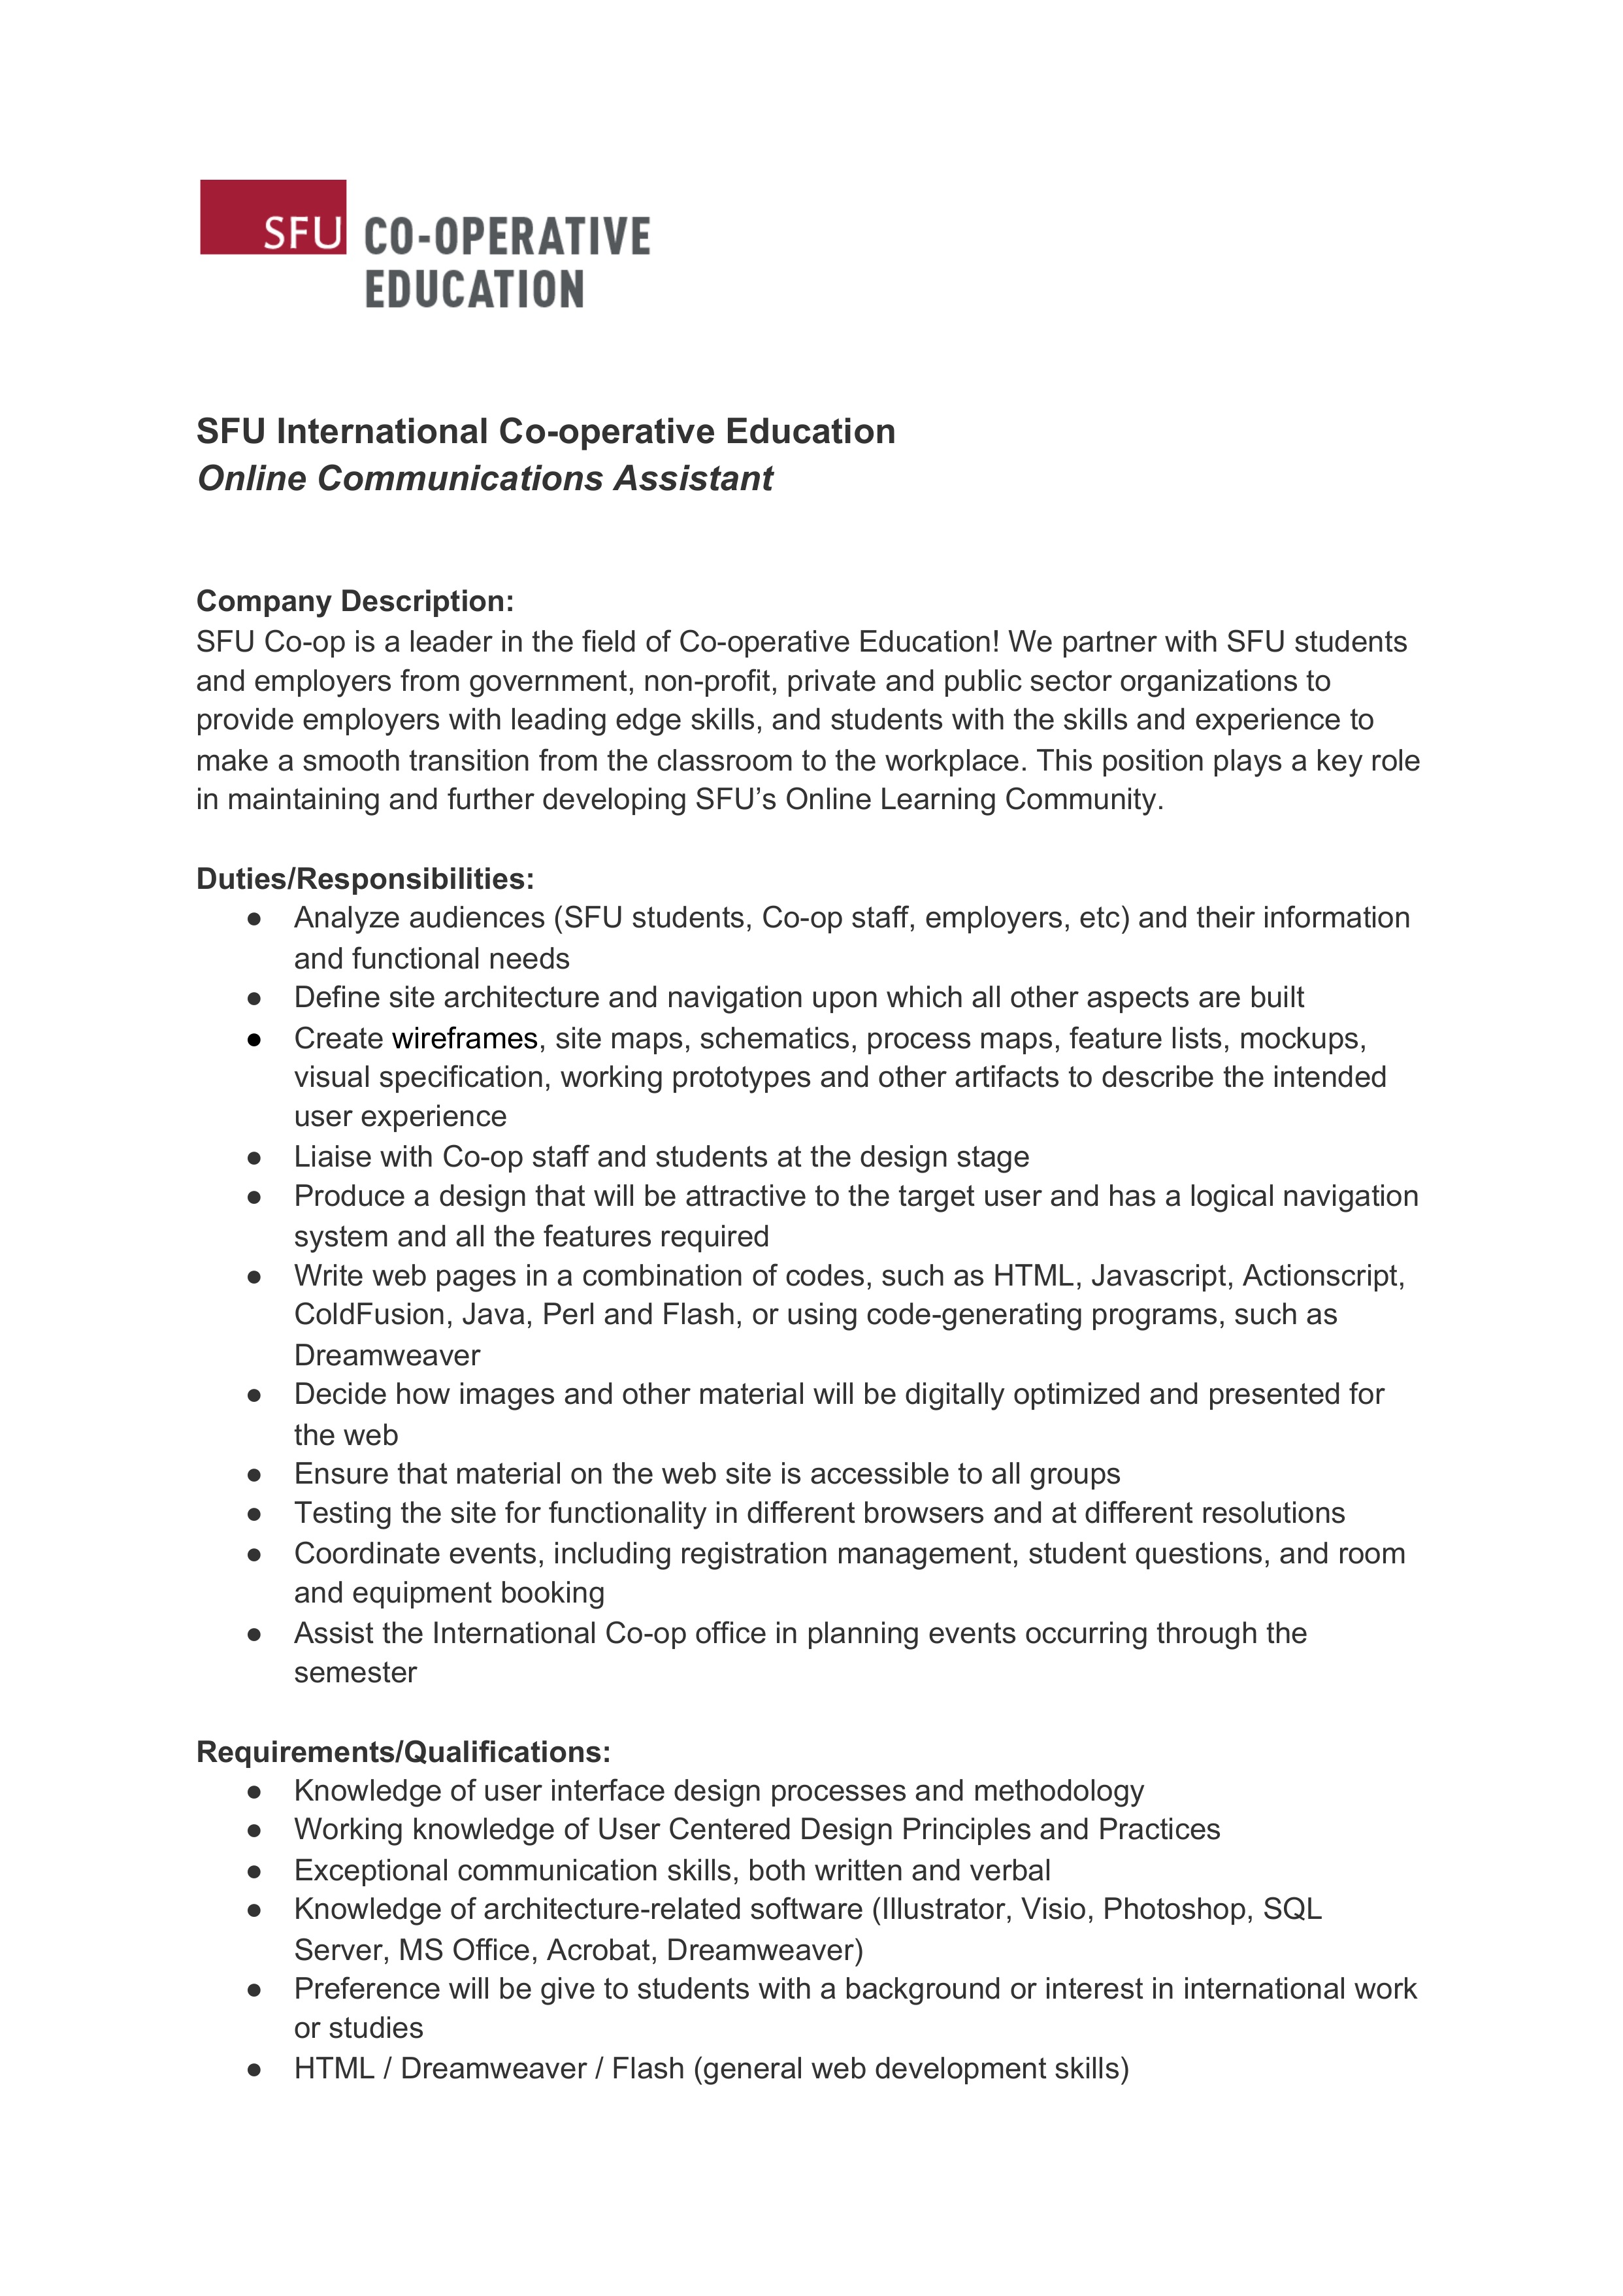 Online Communications Assistant job description (Page 1)